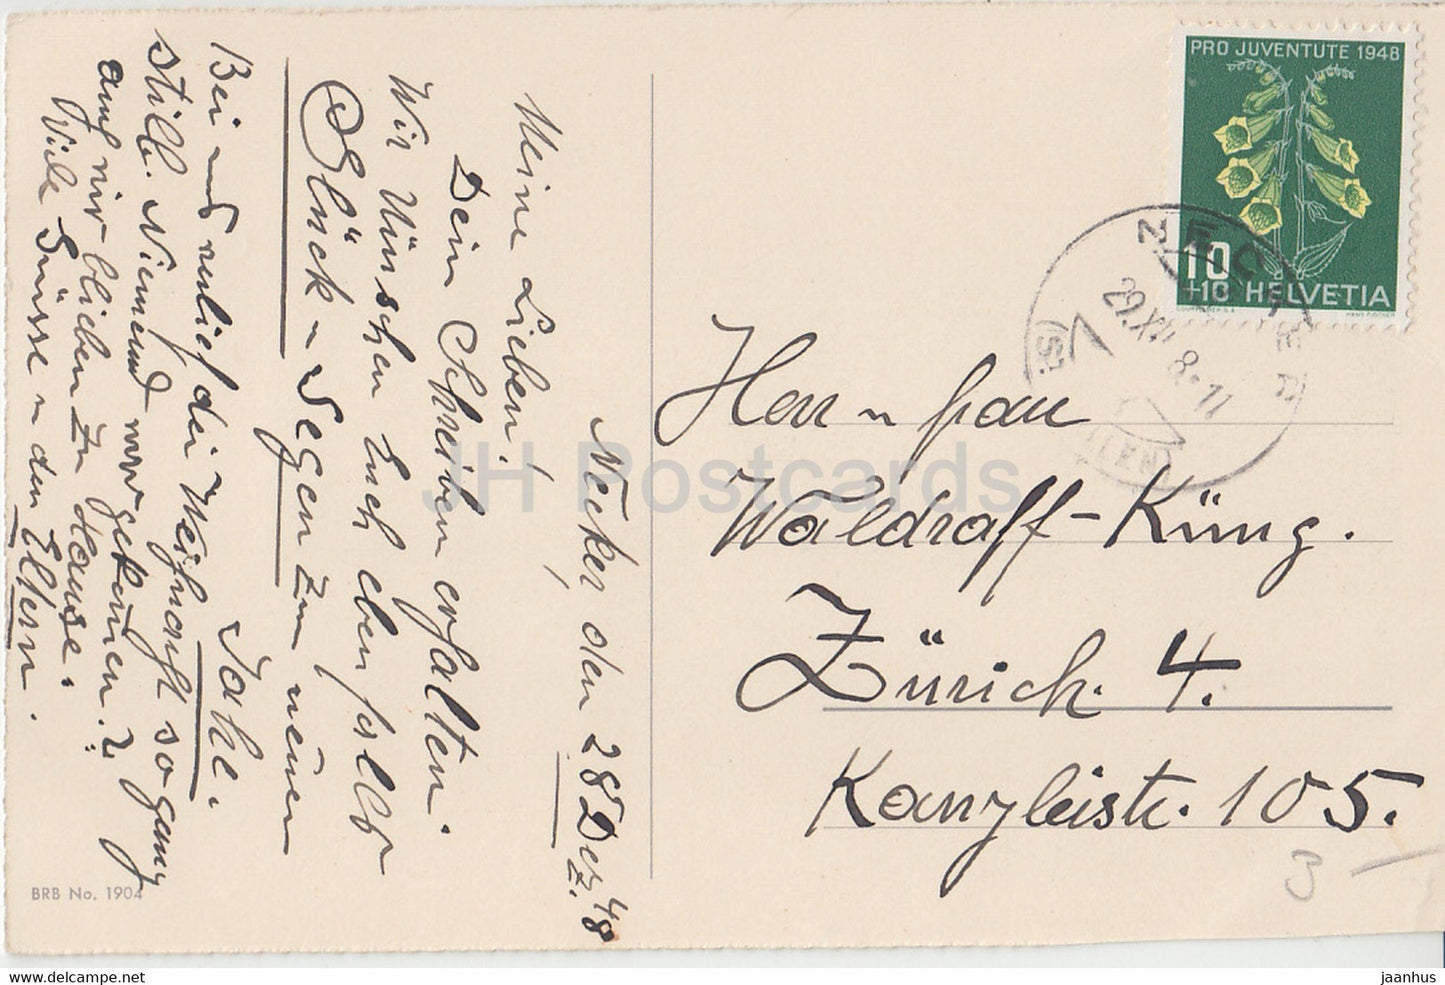 New Year Greeting Card - Die Besten Wunsche zum neuen Jahre - mountains  BRB 1904 - old postcard - 1948 - Germany - used